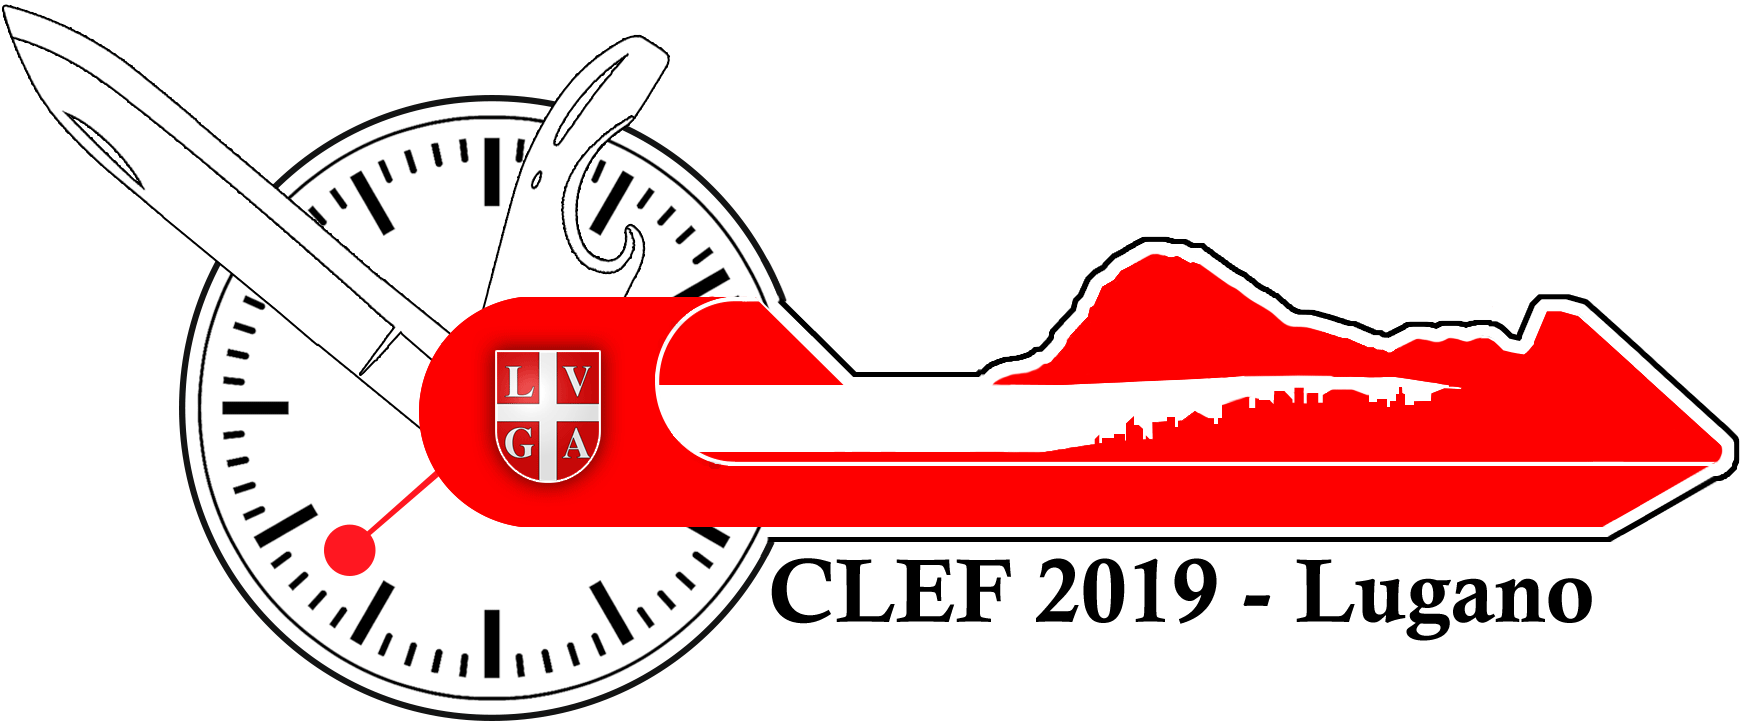 CLEF'19 logo